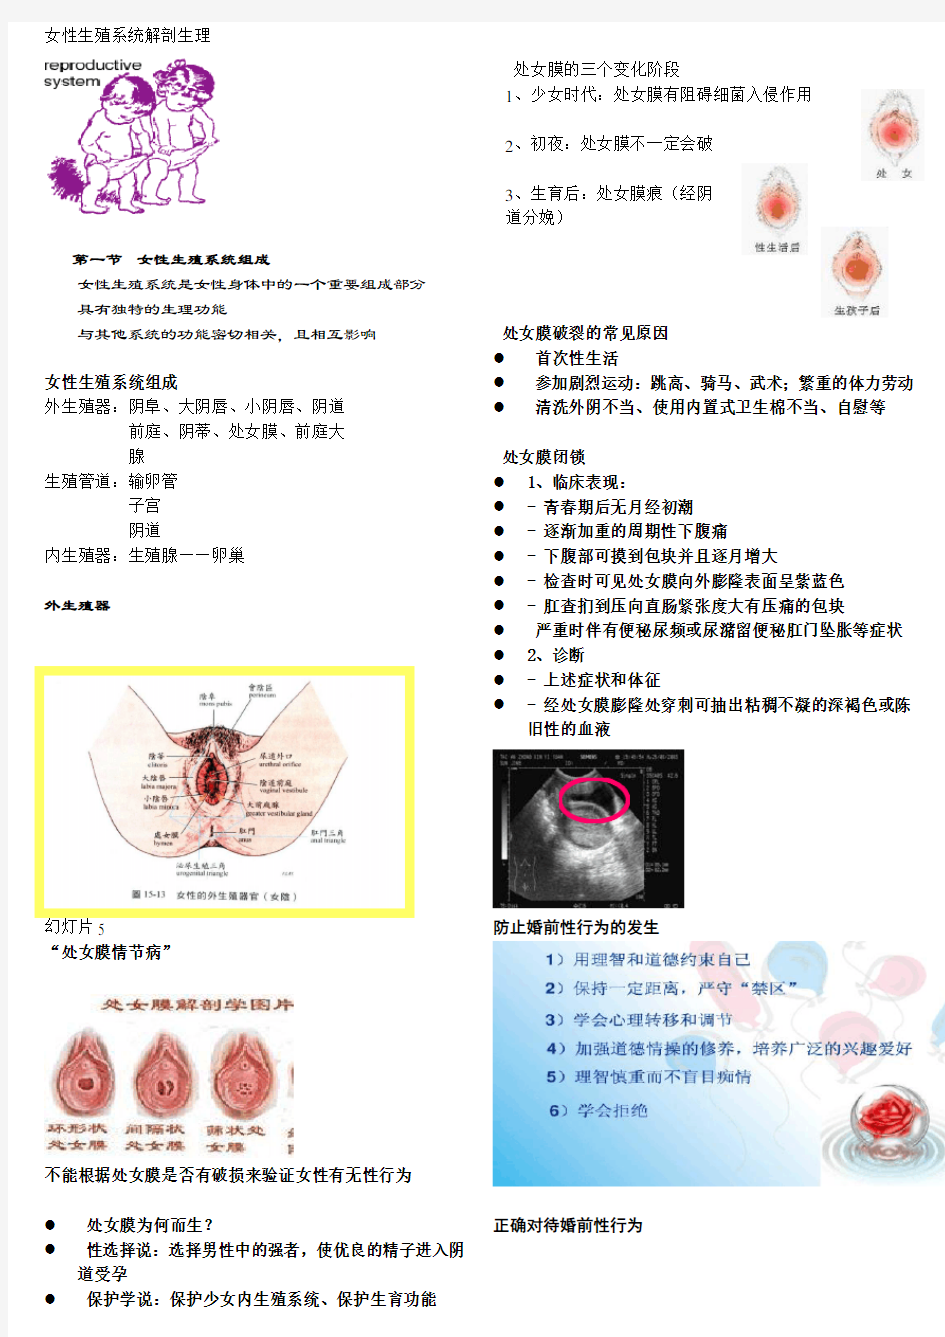 女性保健-女性生殖系统解剖与生理-1